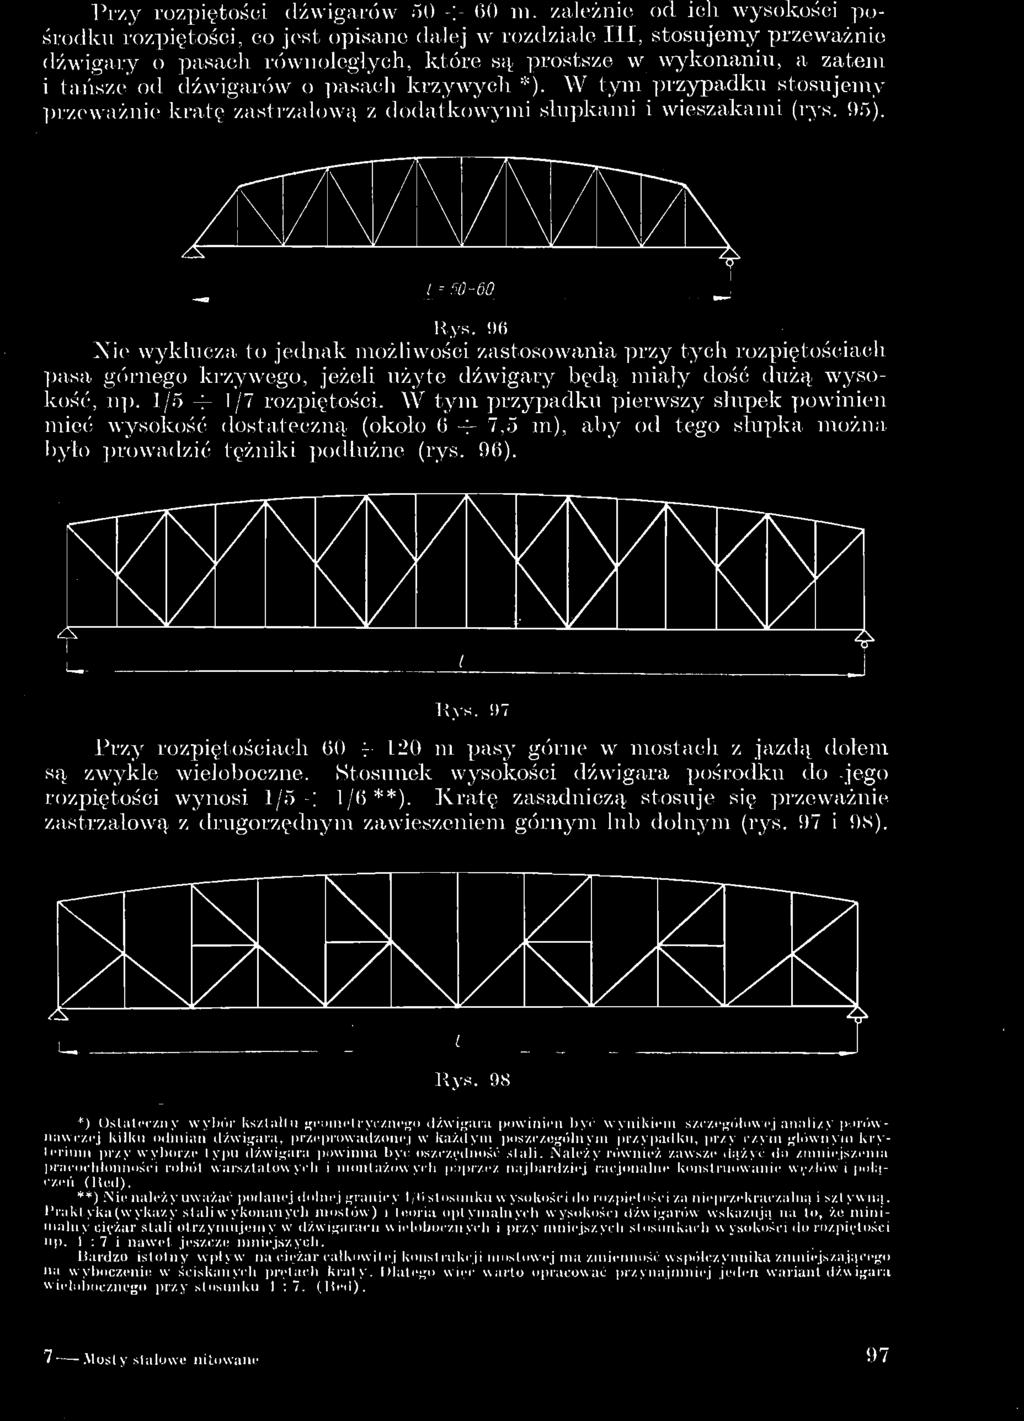 Praktyka(wykazy stali wykonanych mostów) i teoria optymalnych wysokości dźwigarów wskazują na to, że